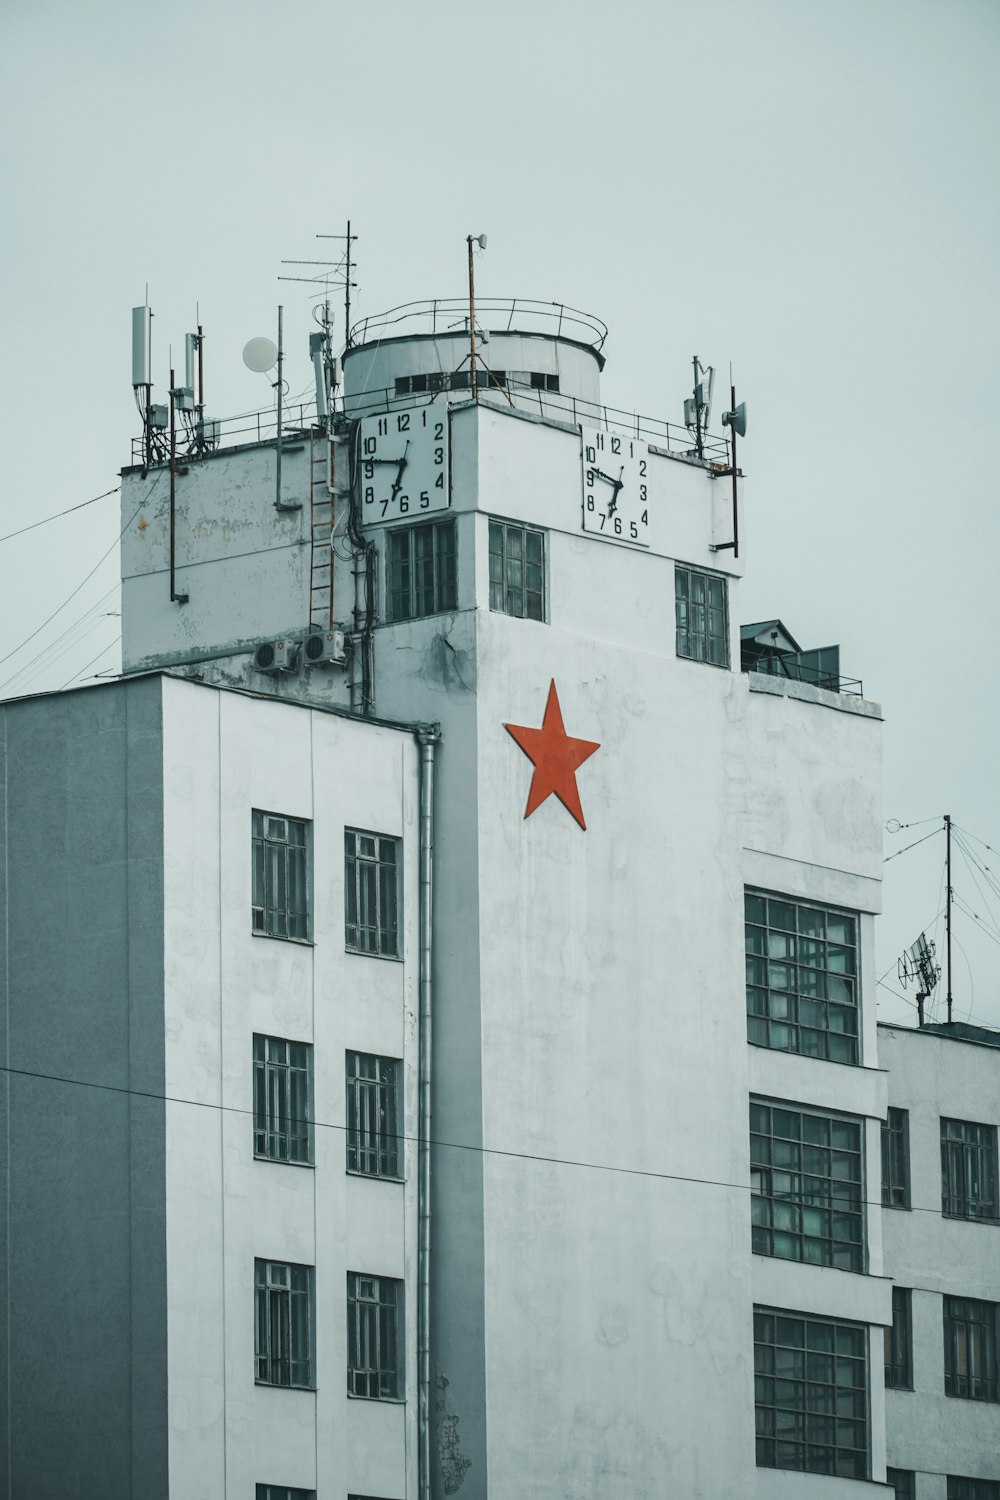 edifício de concreto branco com bandeira vermelha da estrela